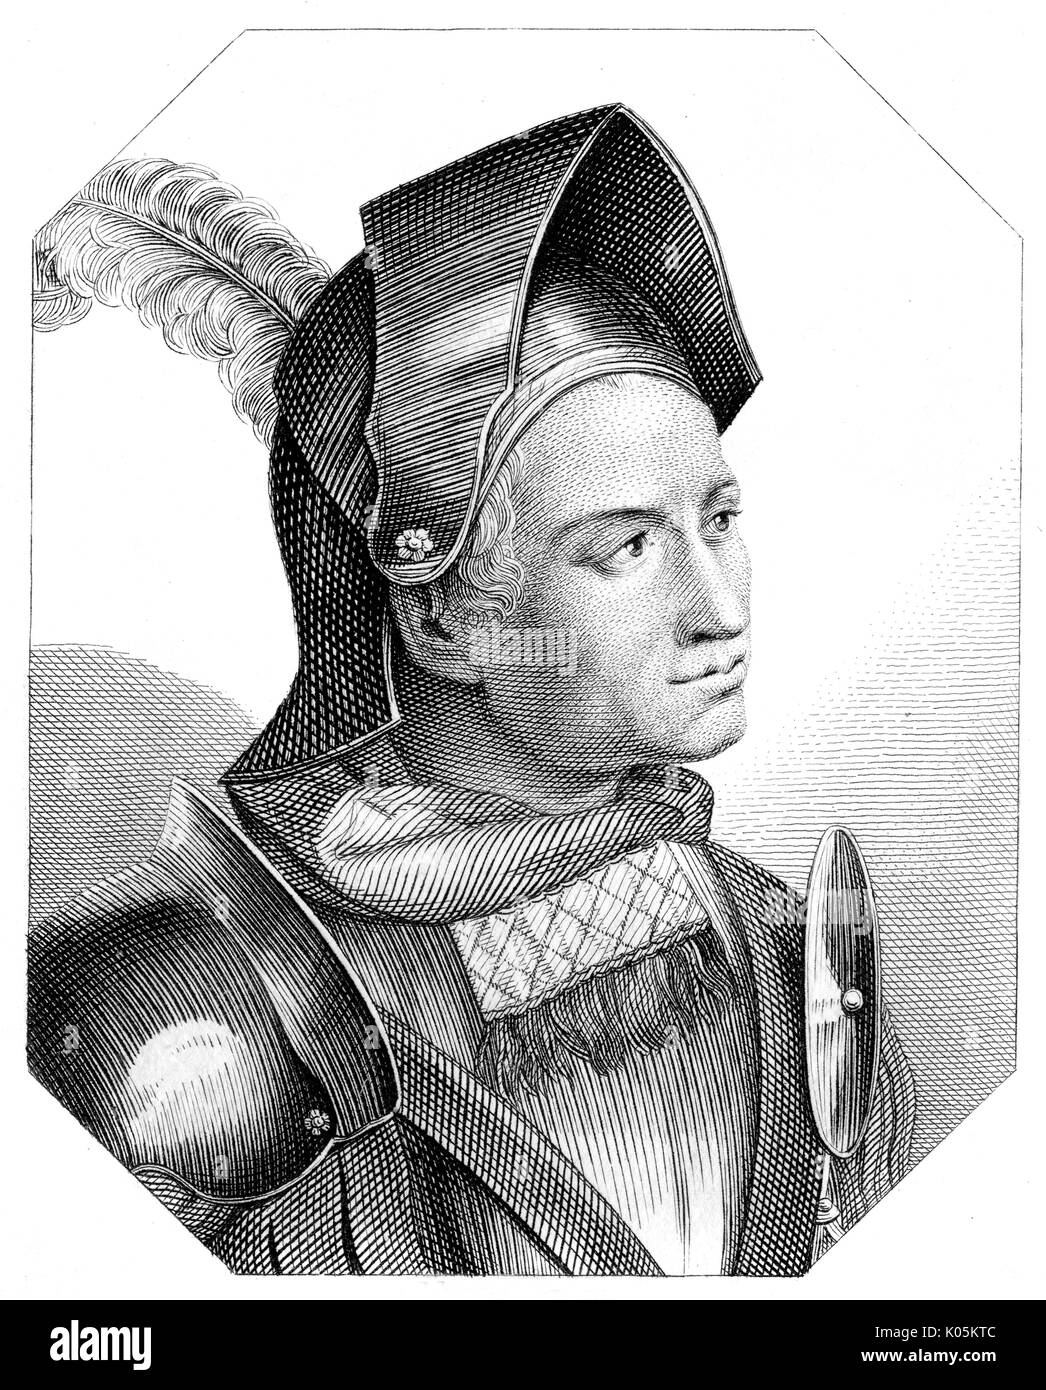 Franz von Sickingen (1481 - 1523) - nobile tedesco e soldato, sostenitore della riforma data: Foto Stock